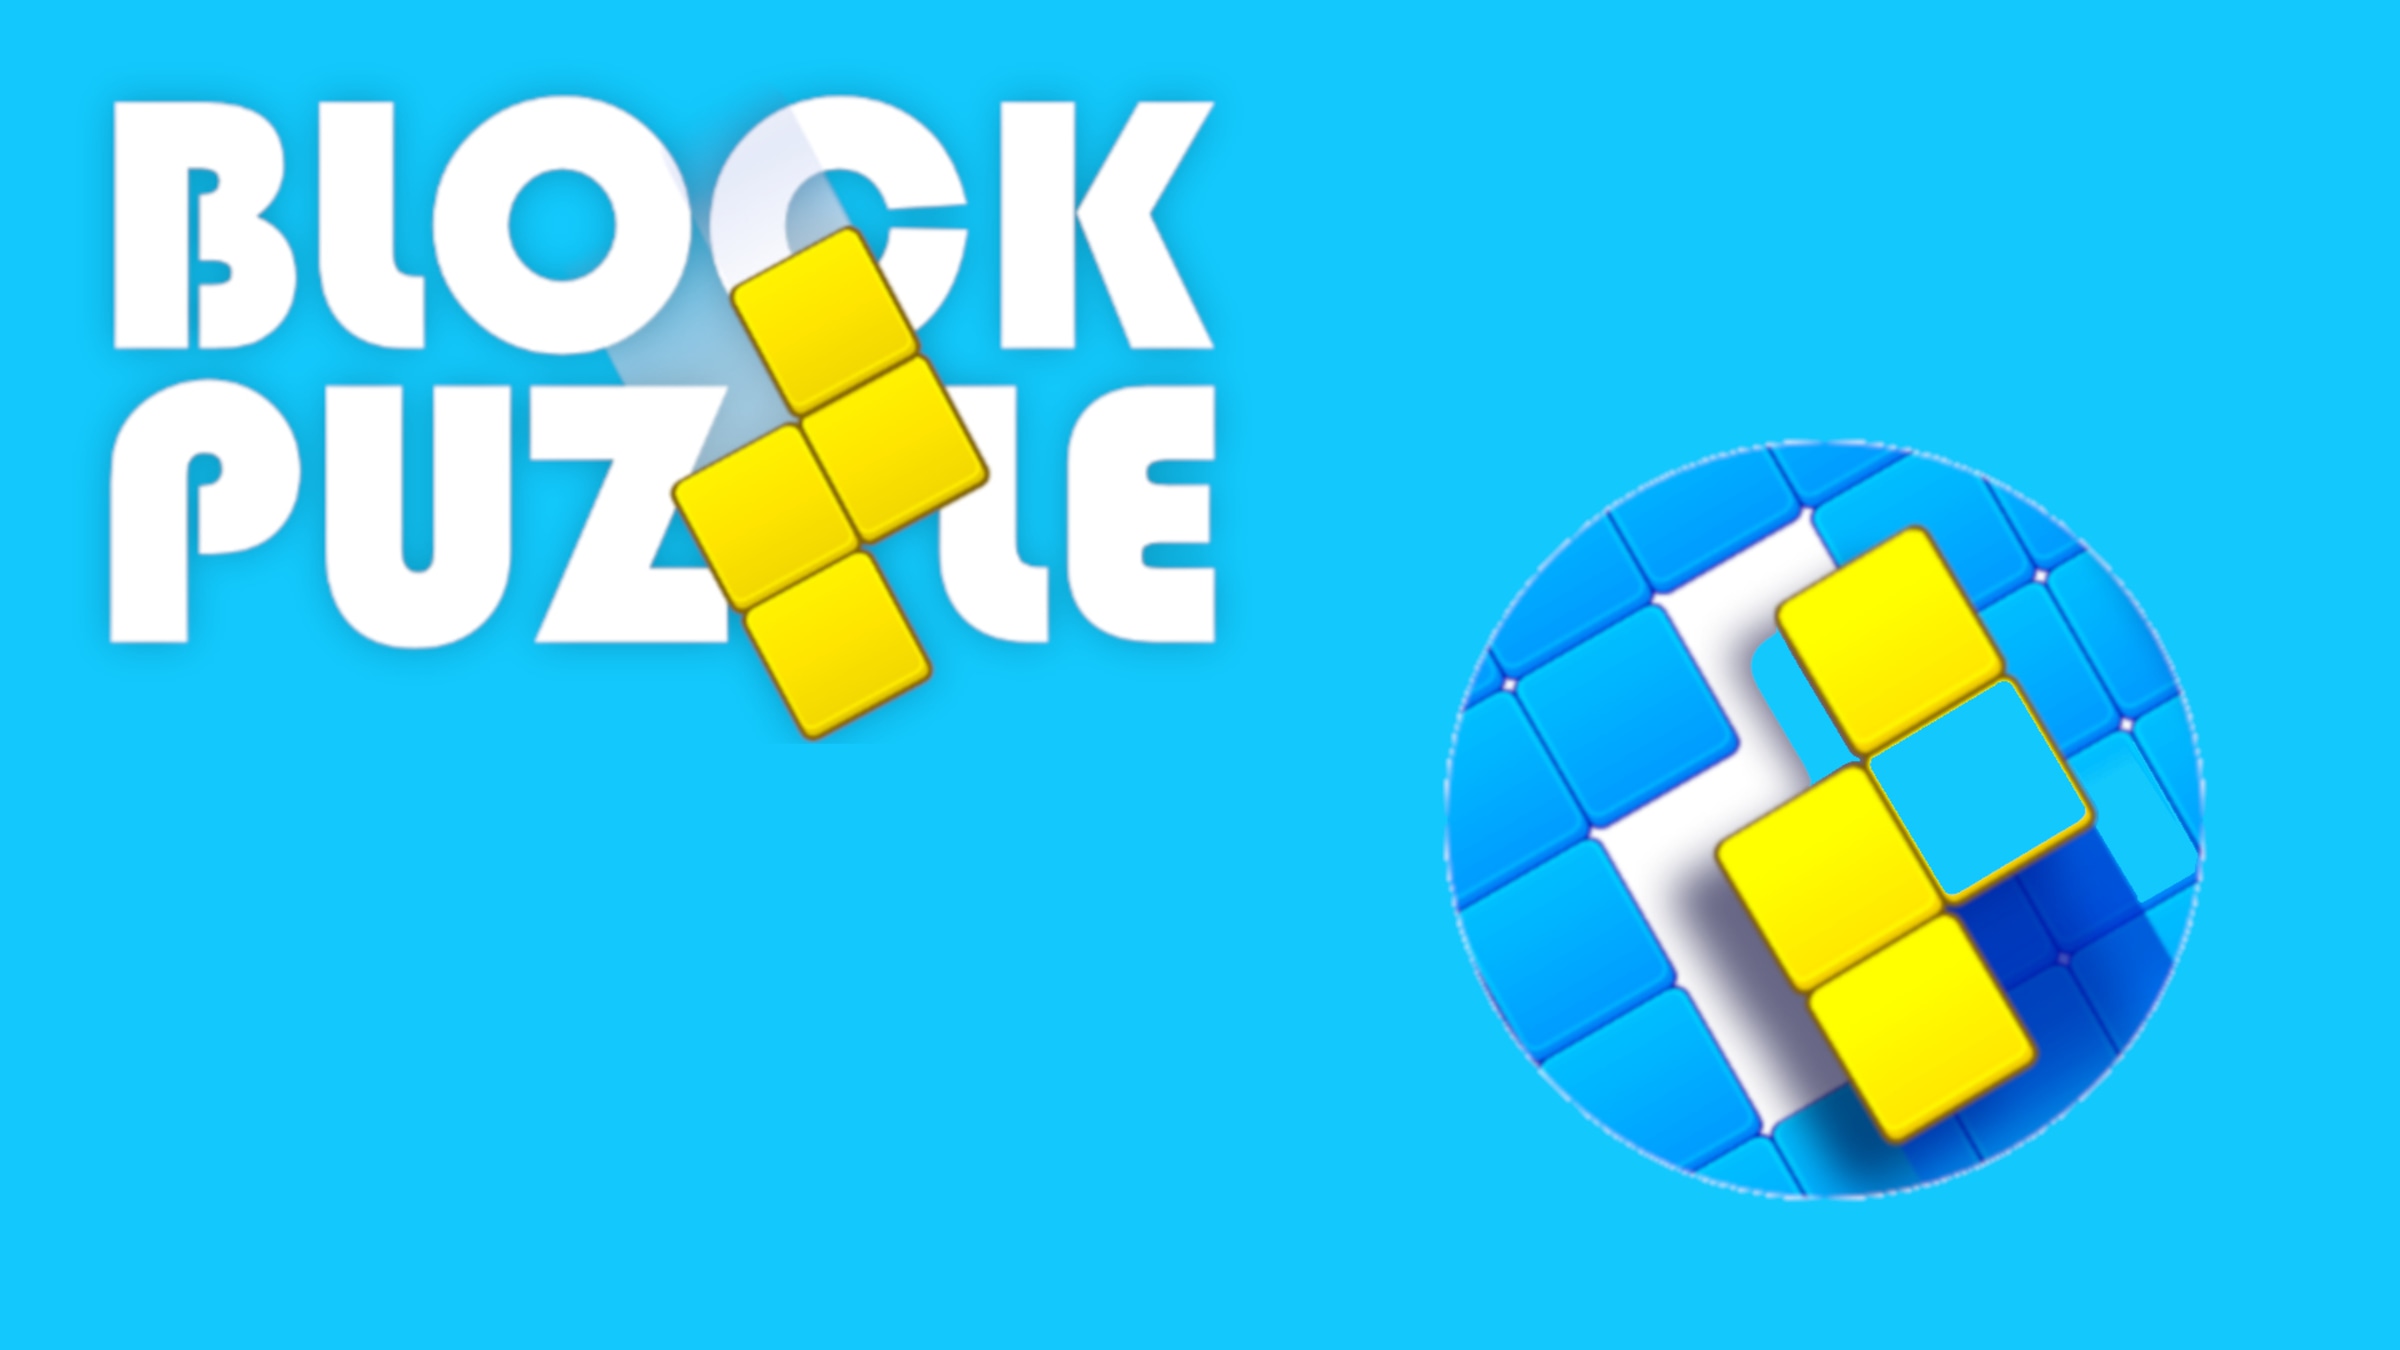 Best Blocks Block Puzzle Games